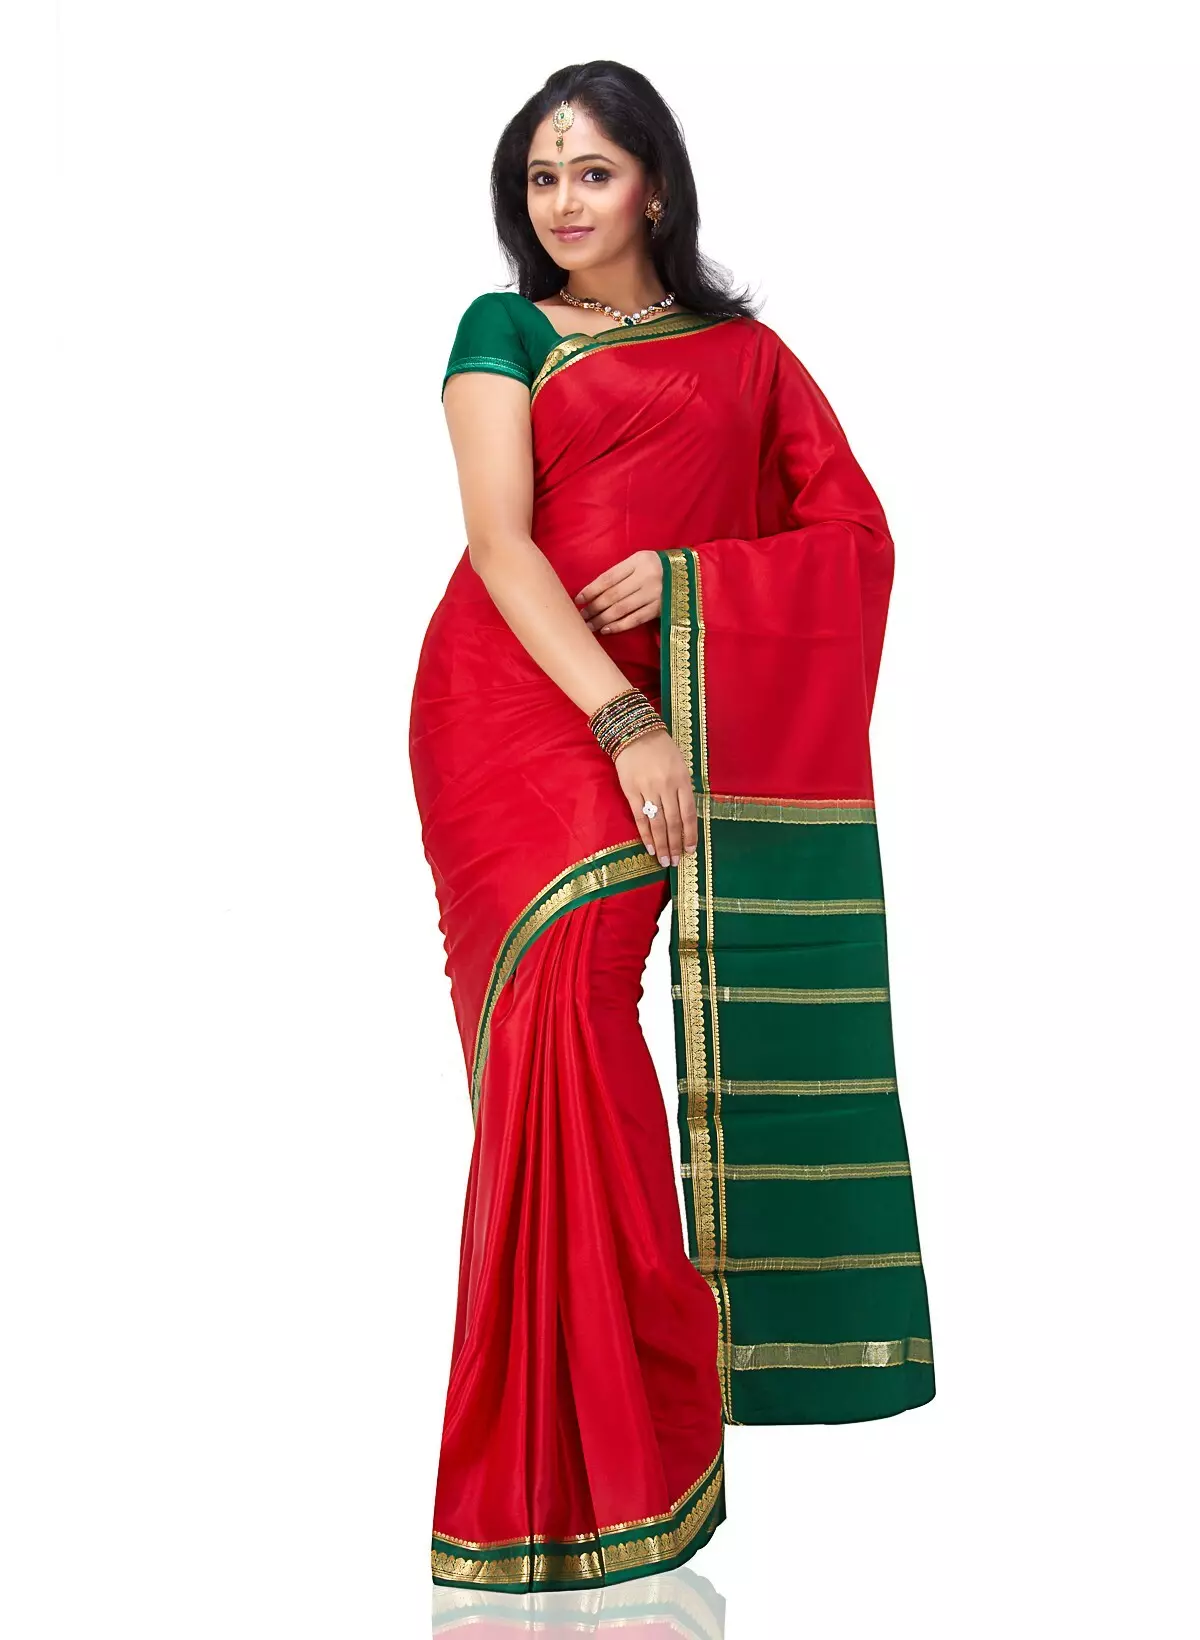 Costume Indian (86 Hoto): Hoto na ƙasa don yarinyar, Yara kayayyaki don rawar Indiya, kayan gargajiya ga yara 1368_24